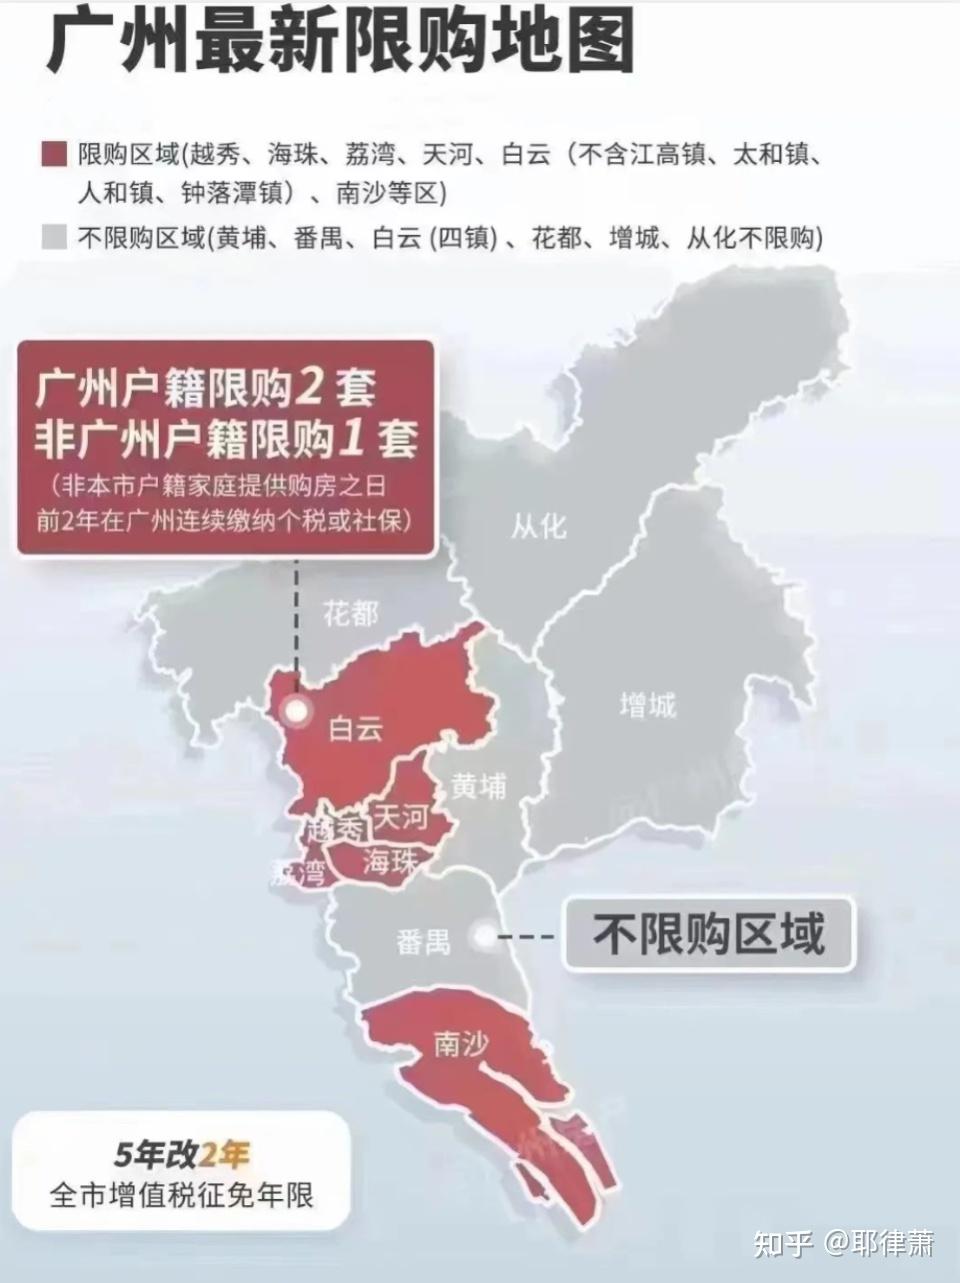 广州放开限购,对中国房地产意味着什么?